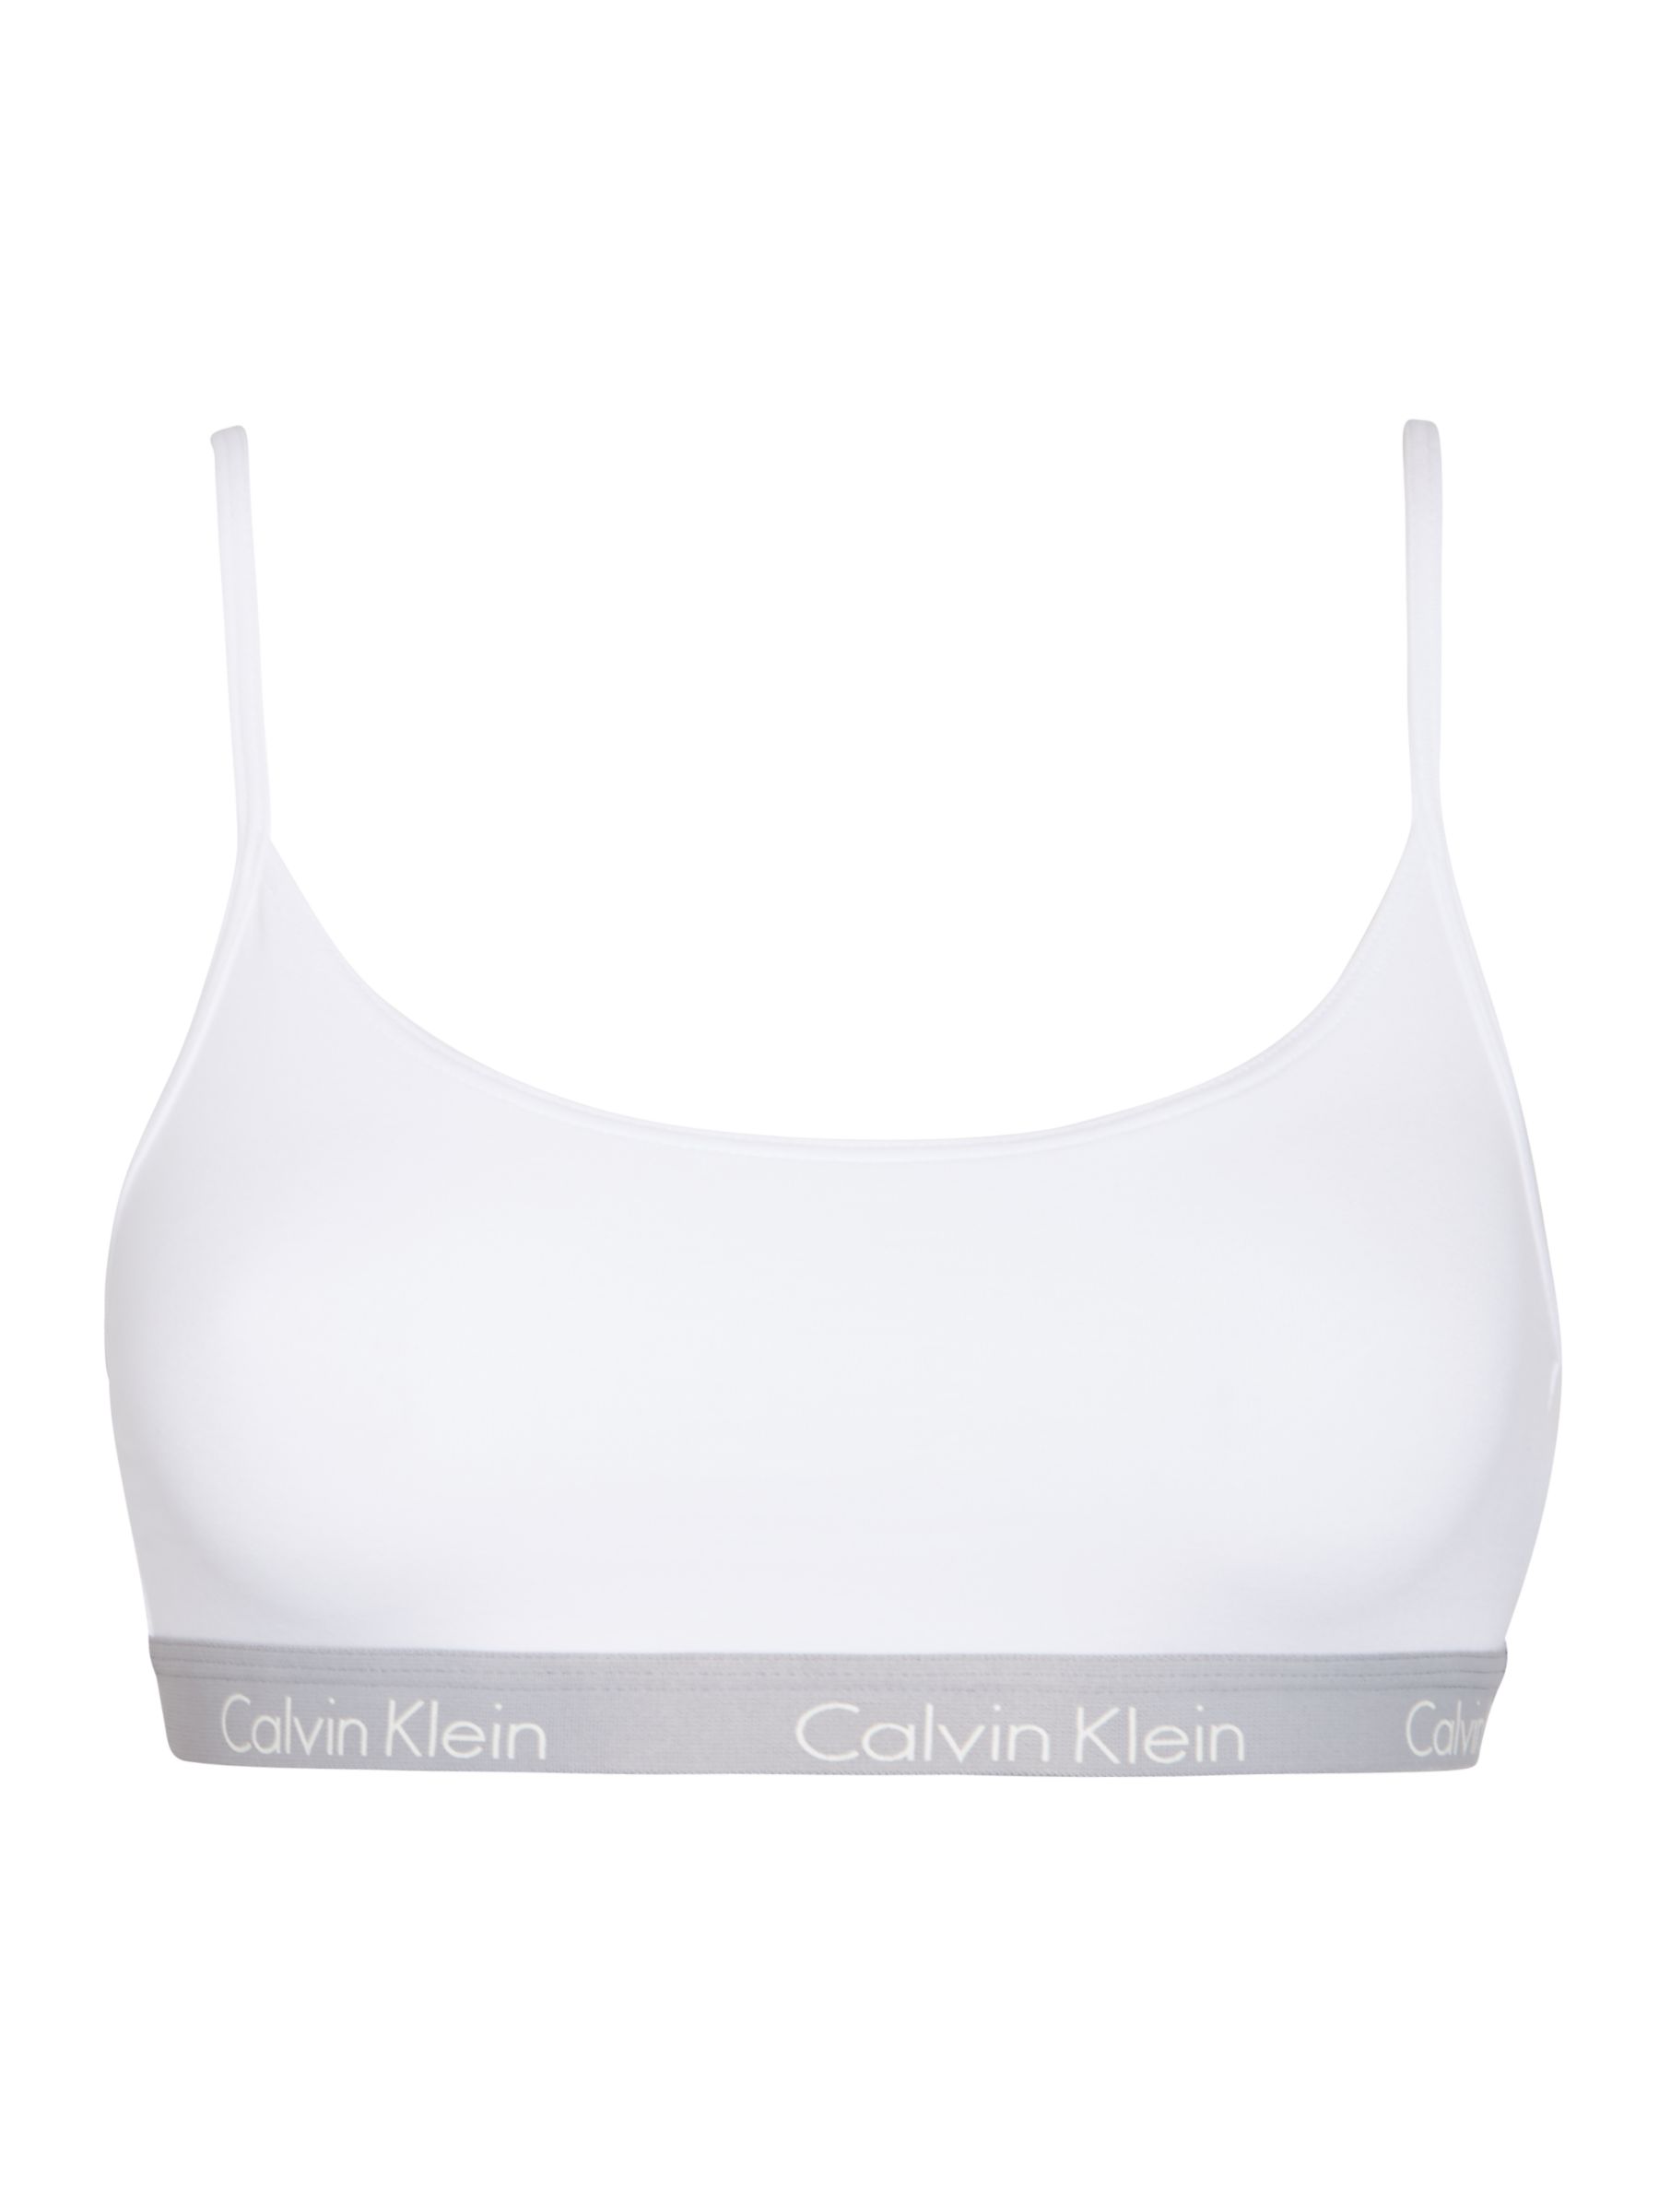 Buy Calvin Klein Underwear CK One Cotton Bralette | John Lewis